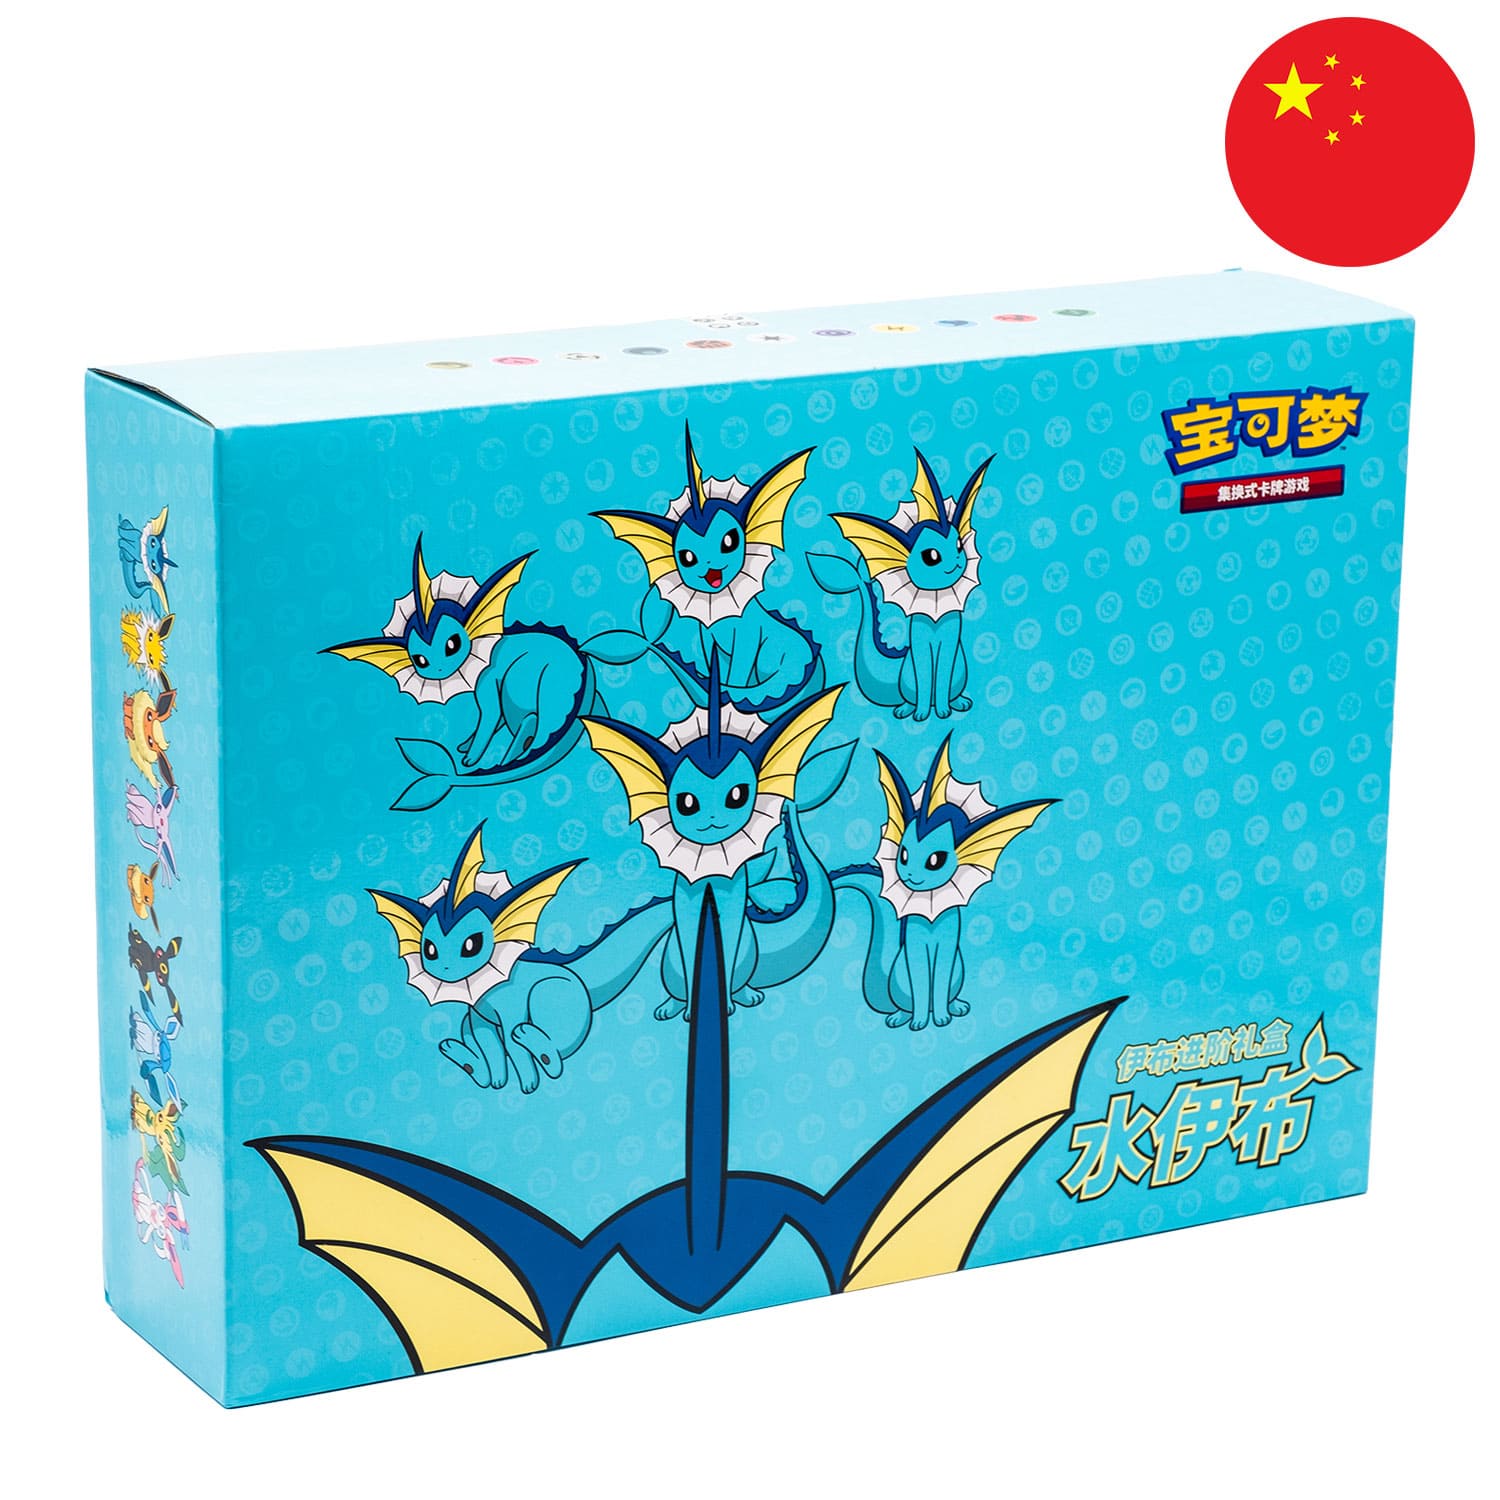 Die Pokemon Box Auquana (CSH1) in Blau, frontal&schräg als Hauptbild, mit dem Bild Chinas als rundes Icon in der Ecke.